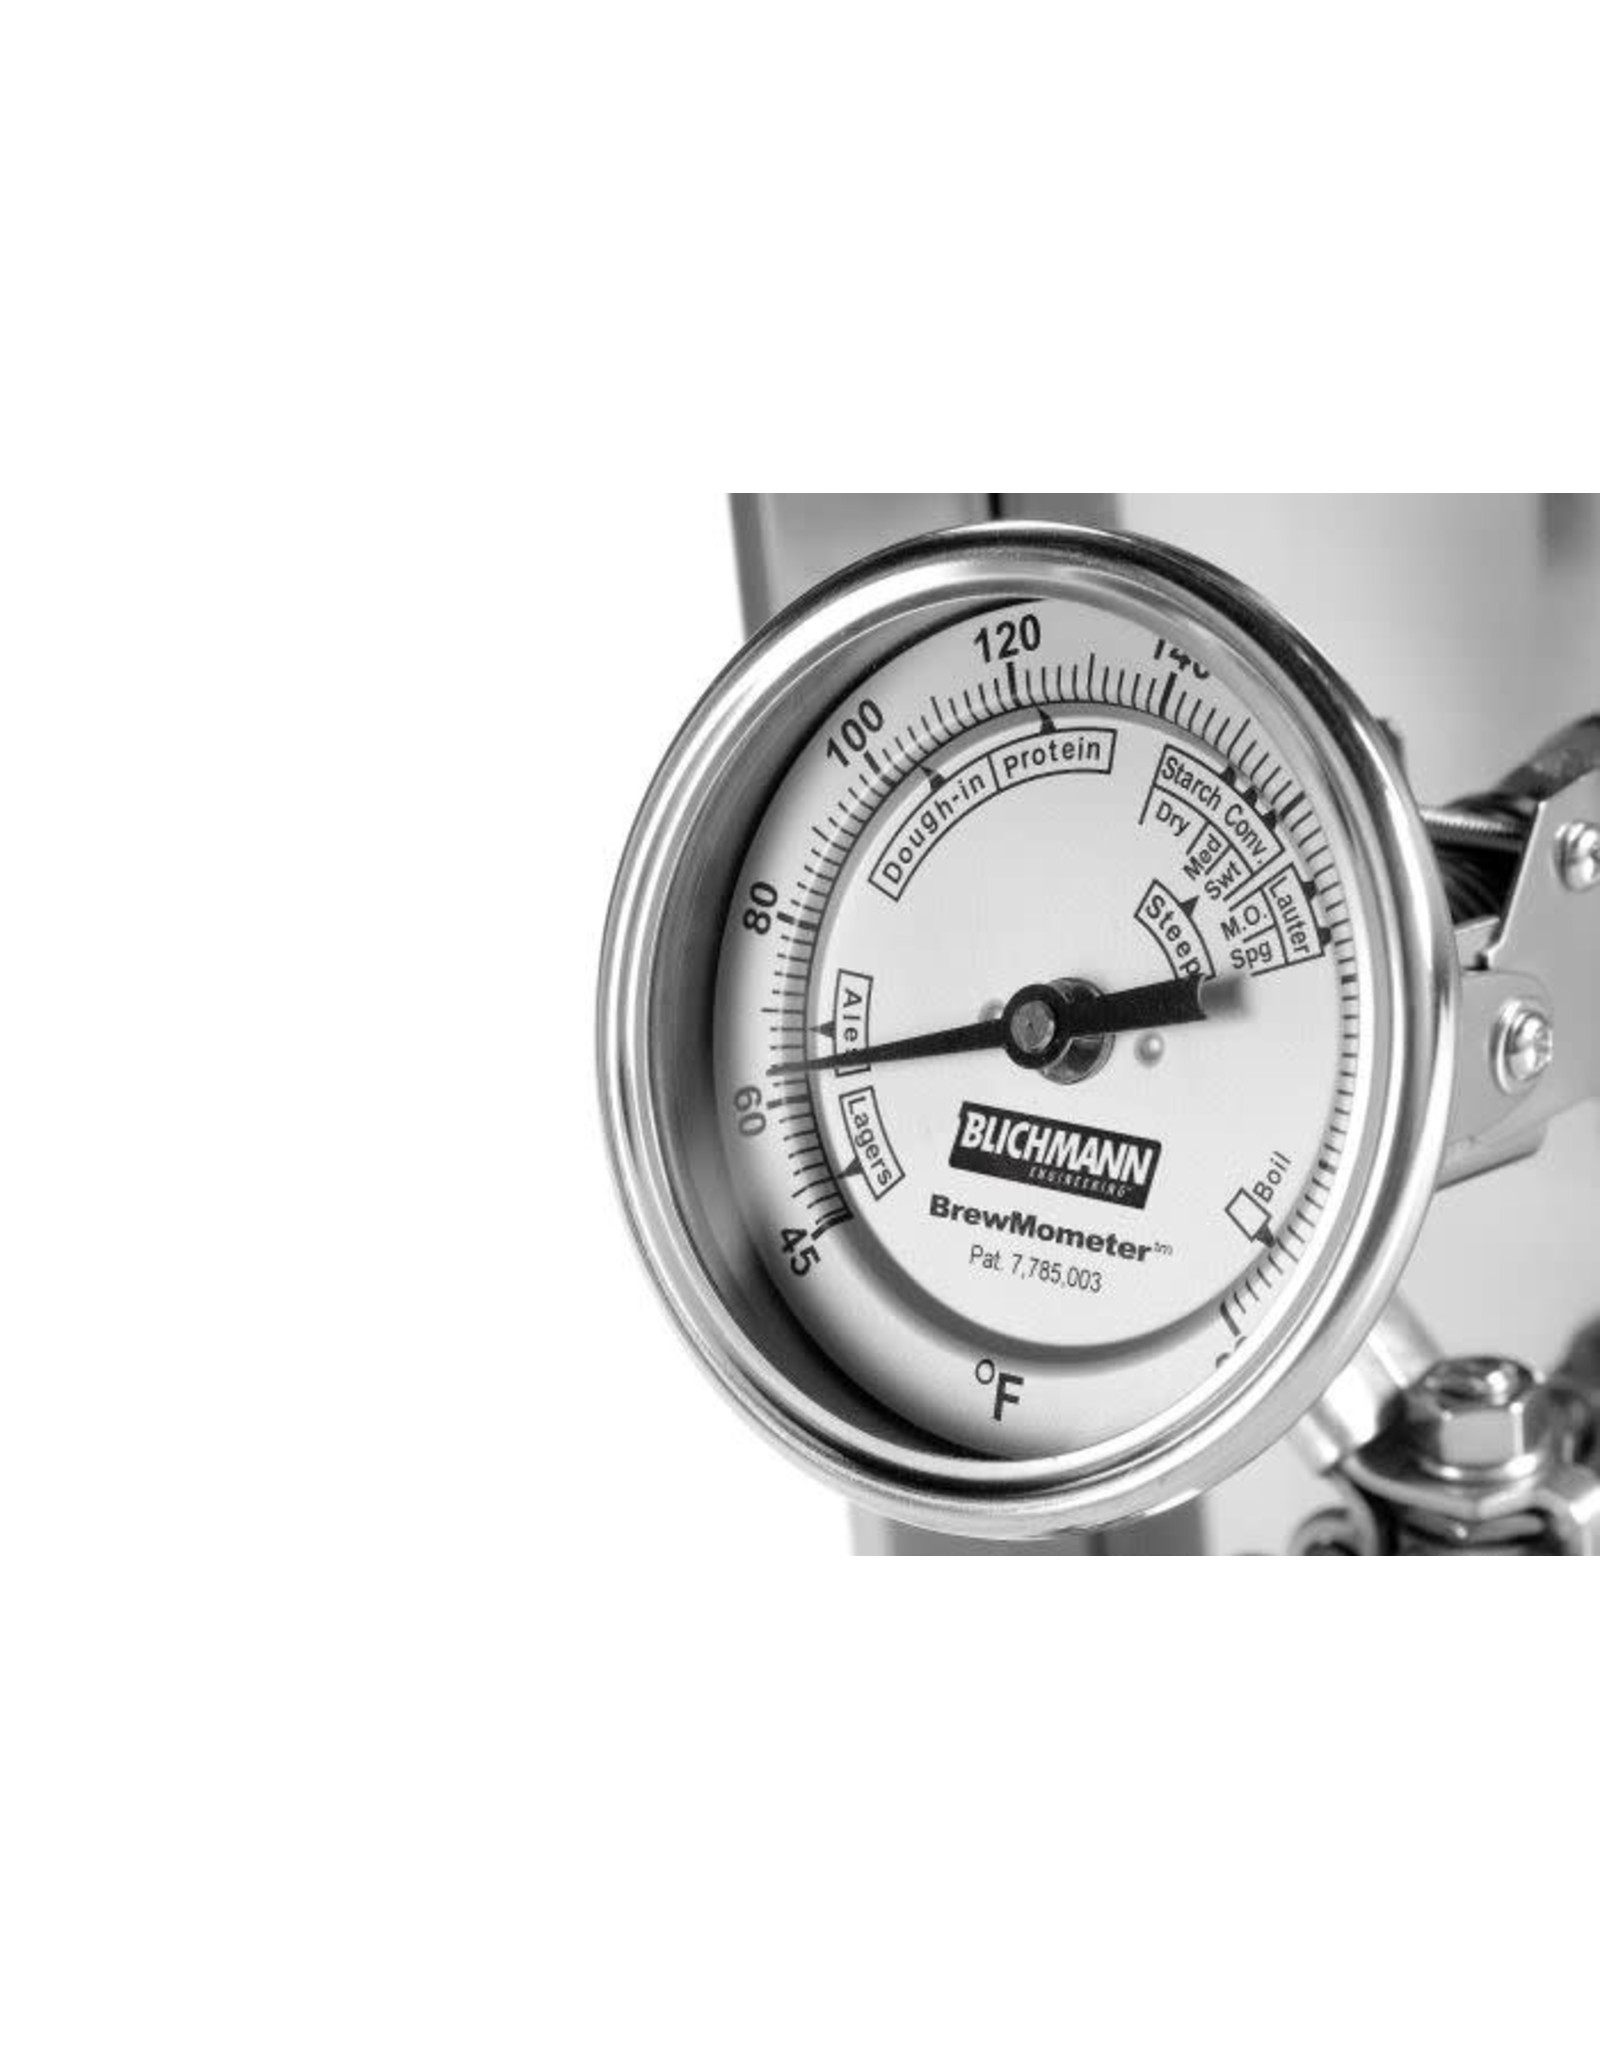 Blichmann BrewMometer Assy Weldless Adjustable Fahrenheit Blichmann